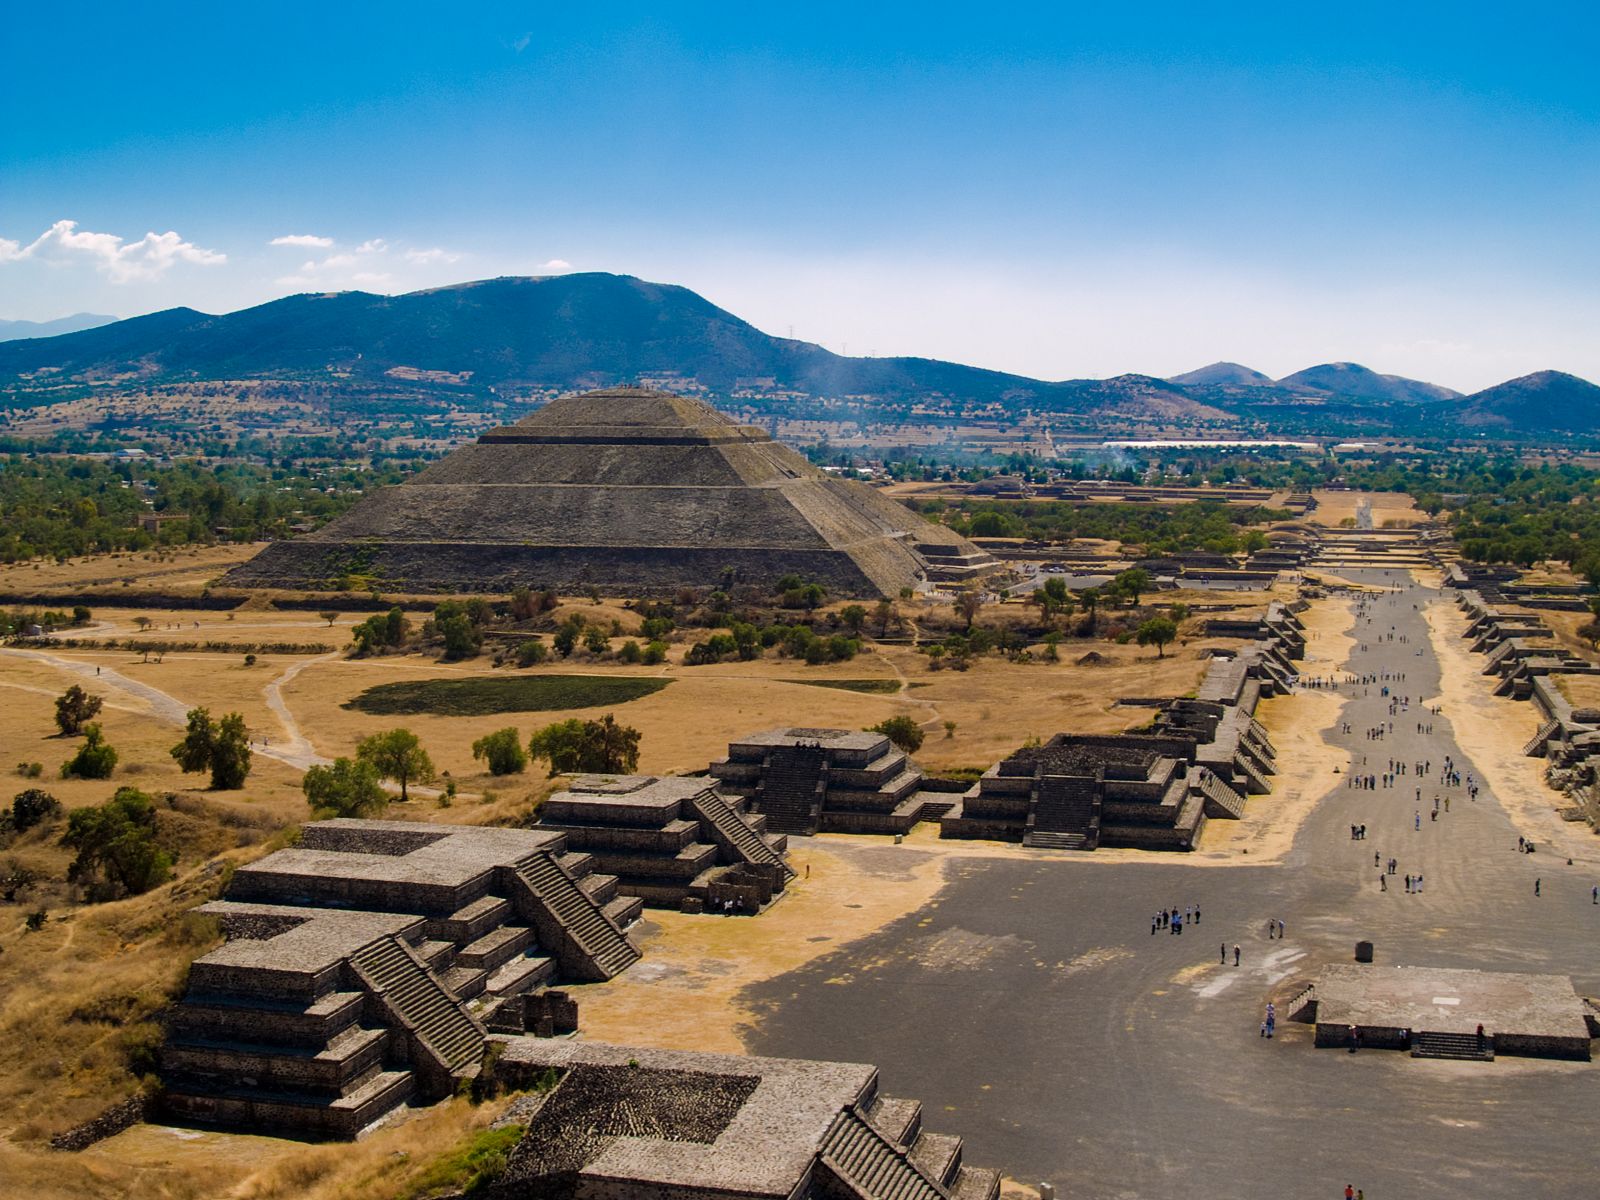 La ciudad prehispánica de Teotihuacán